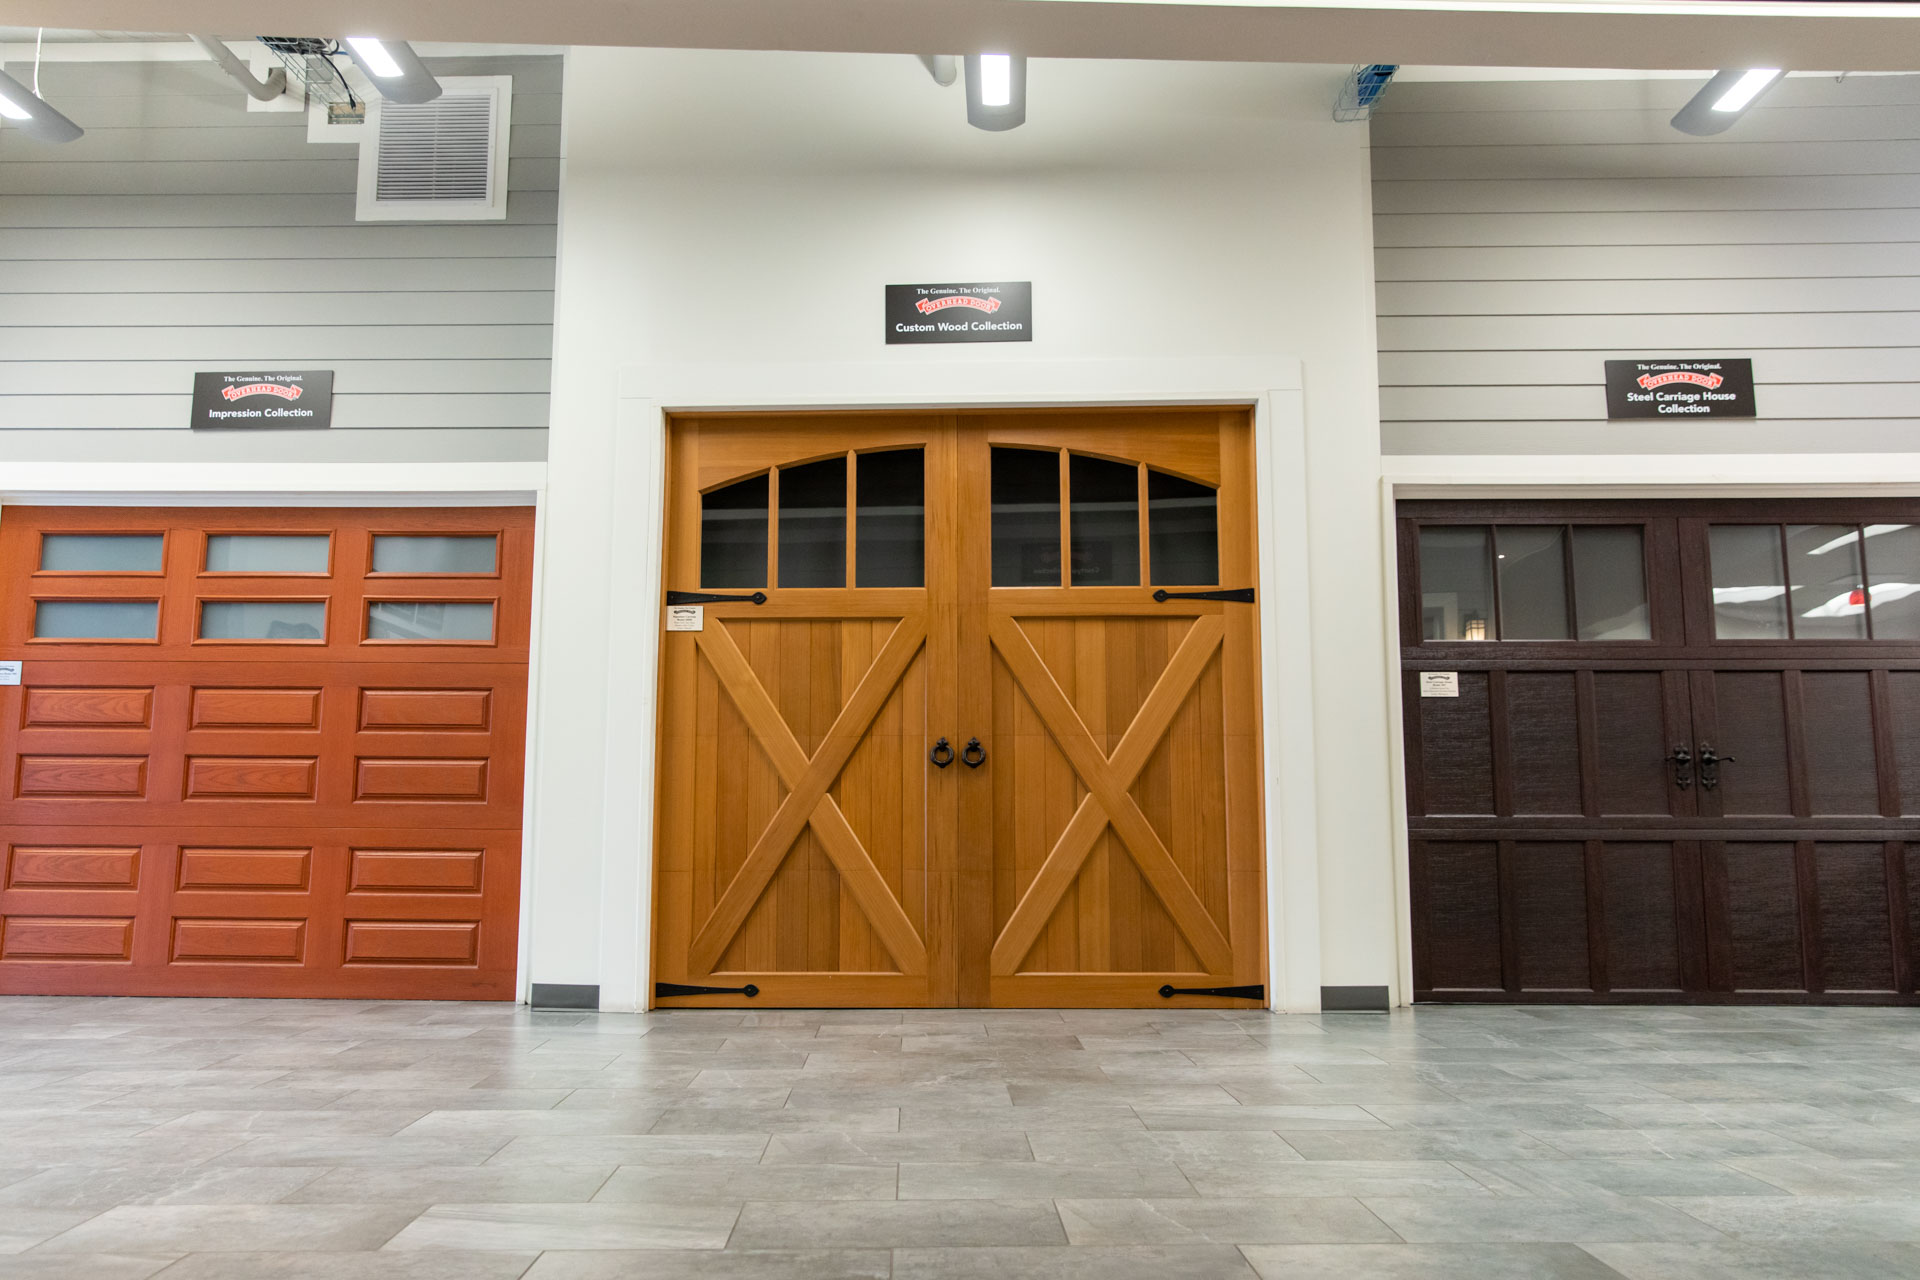 Garage Door Showroom Overhead, Colorado Springs Garage Door Companies